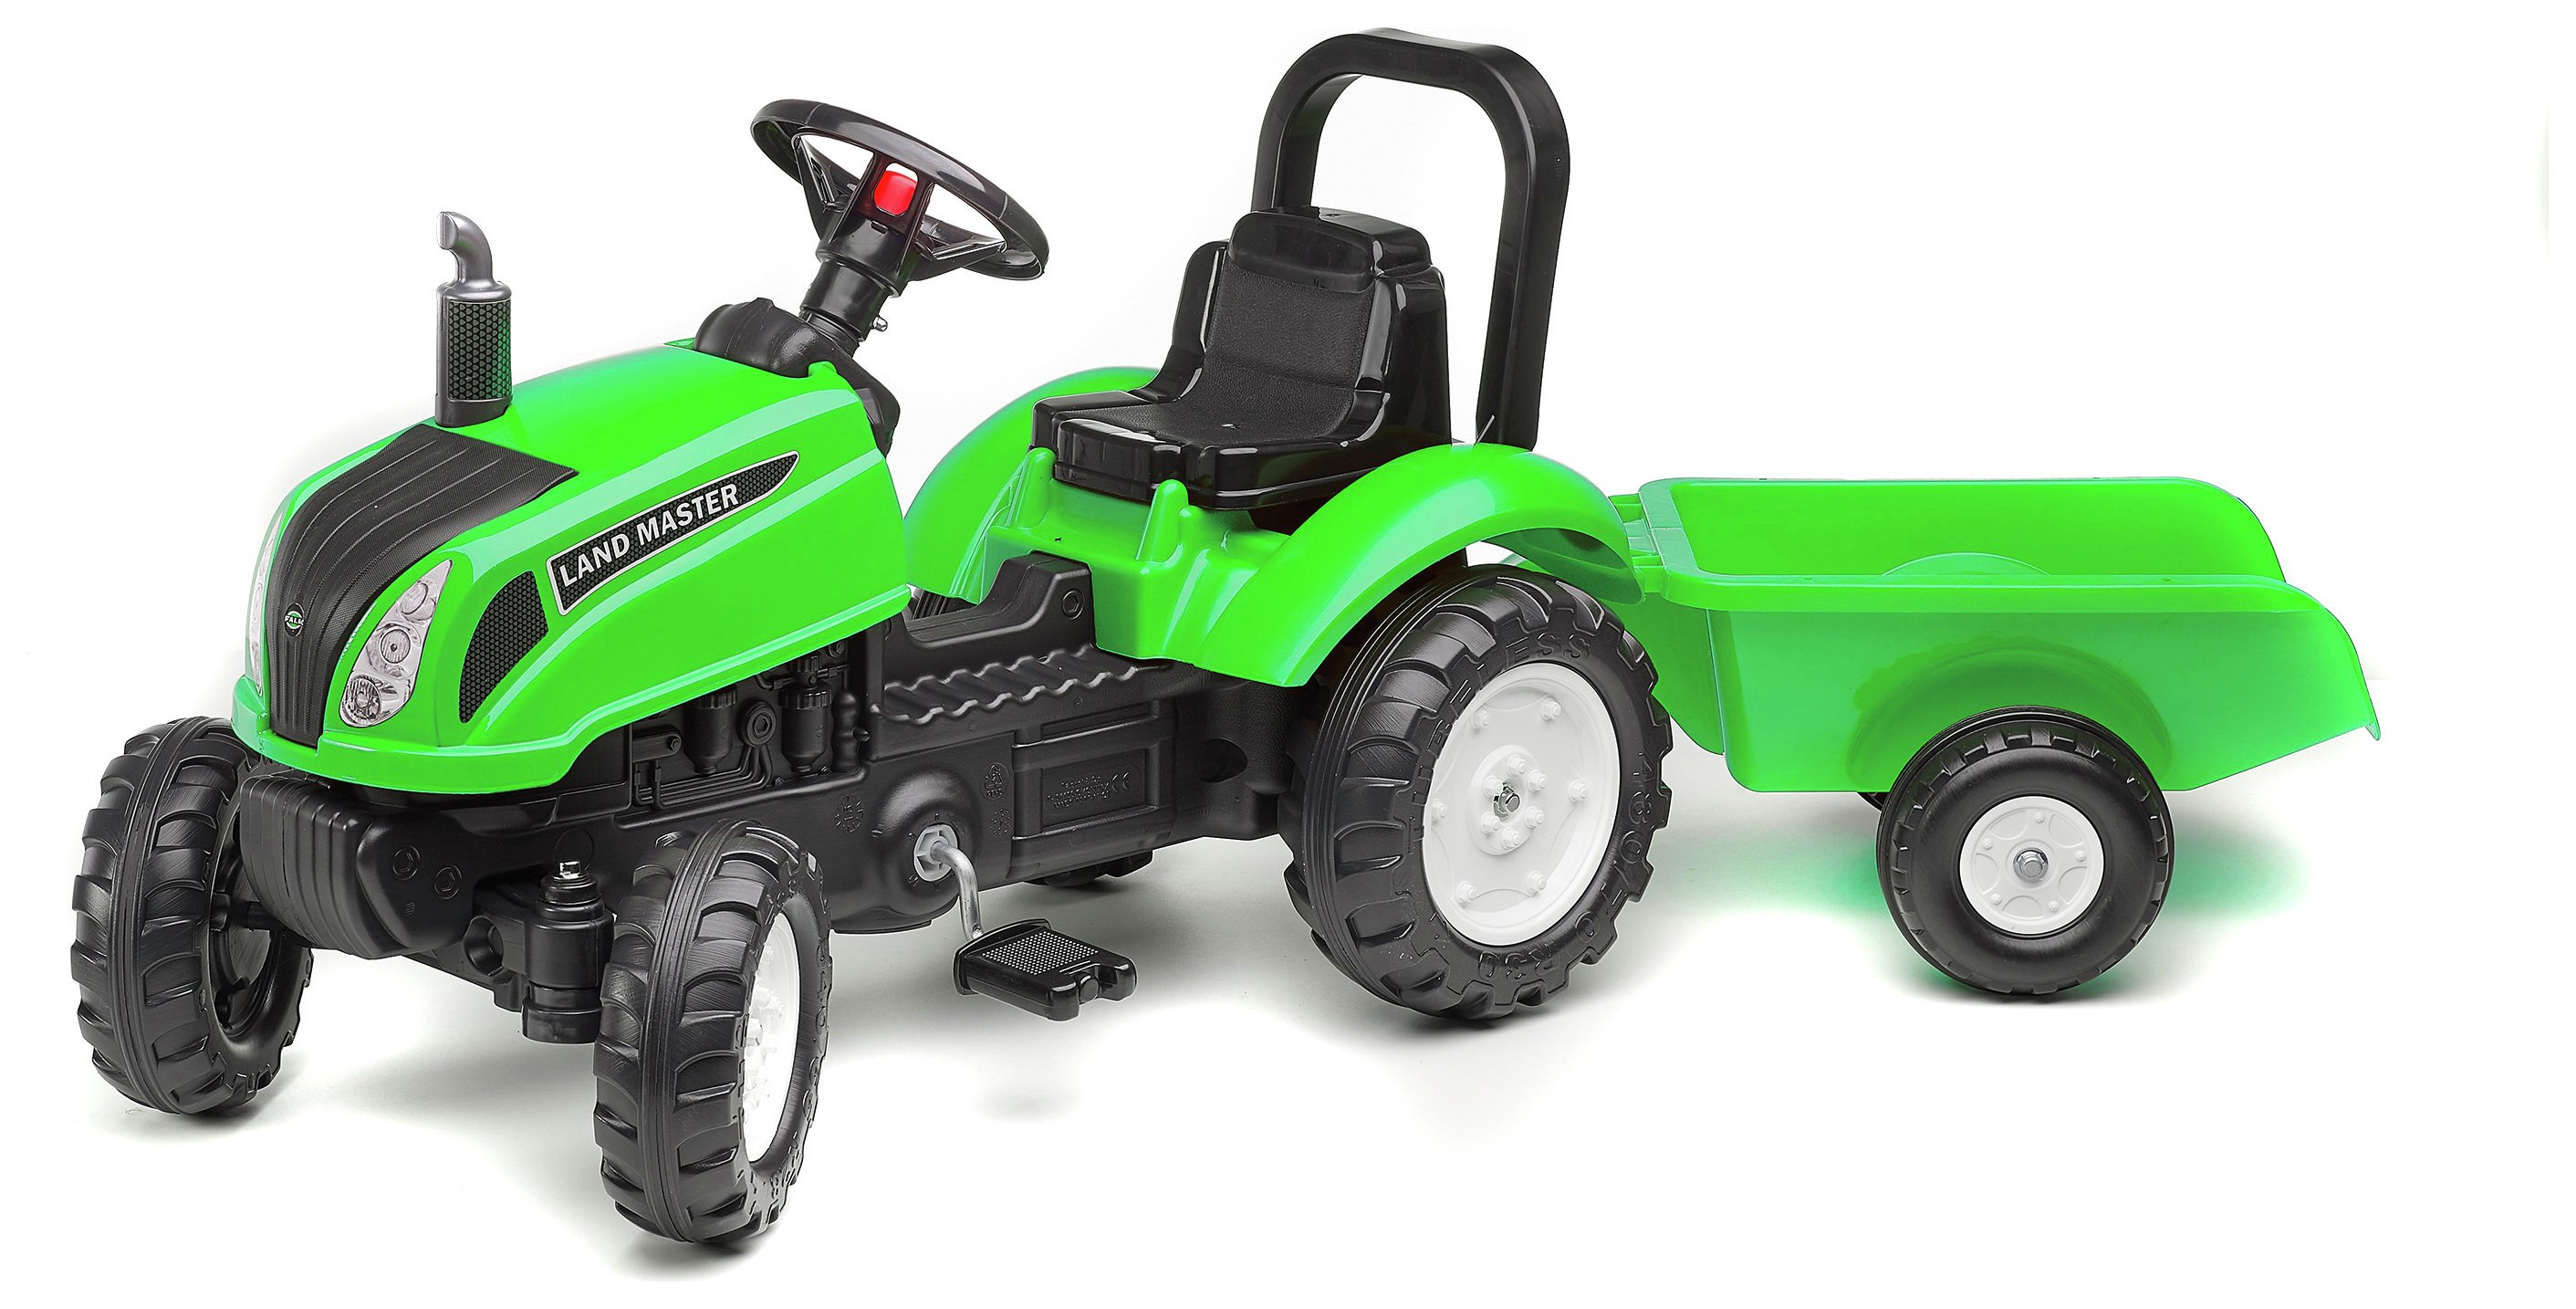 Traktor Garden Master in grün mit Anhänger